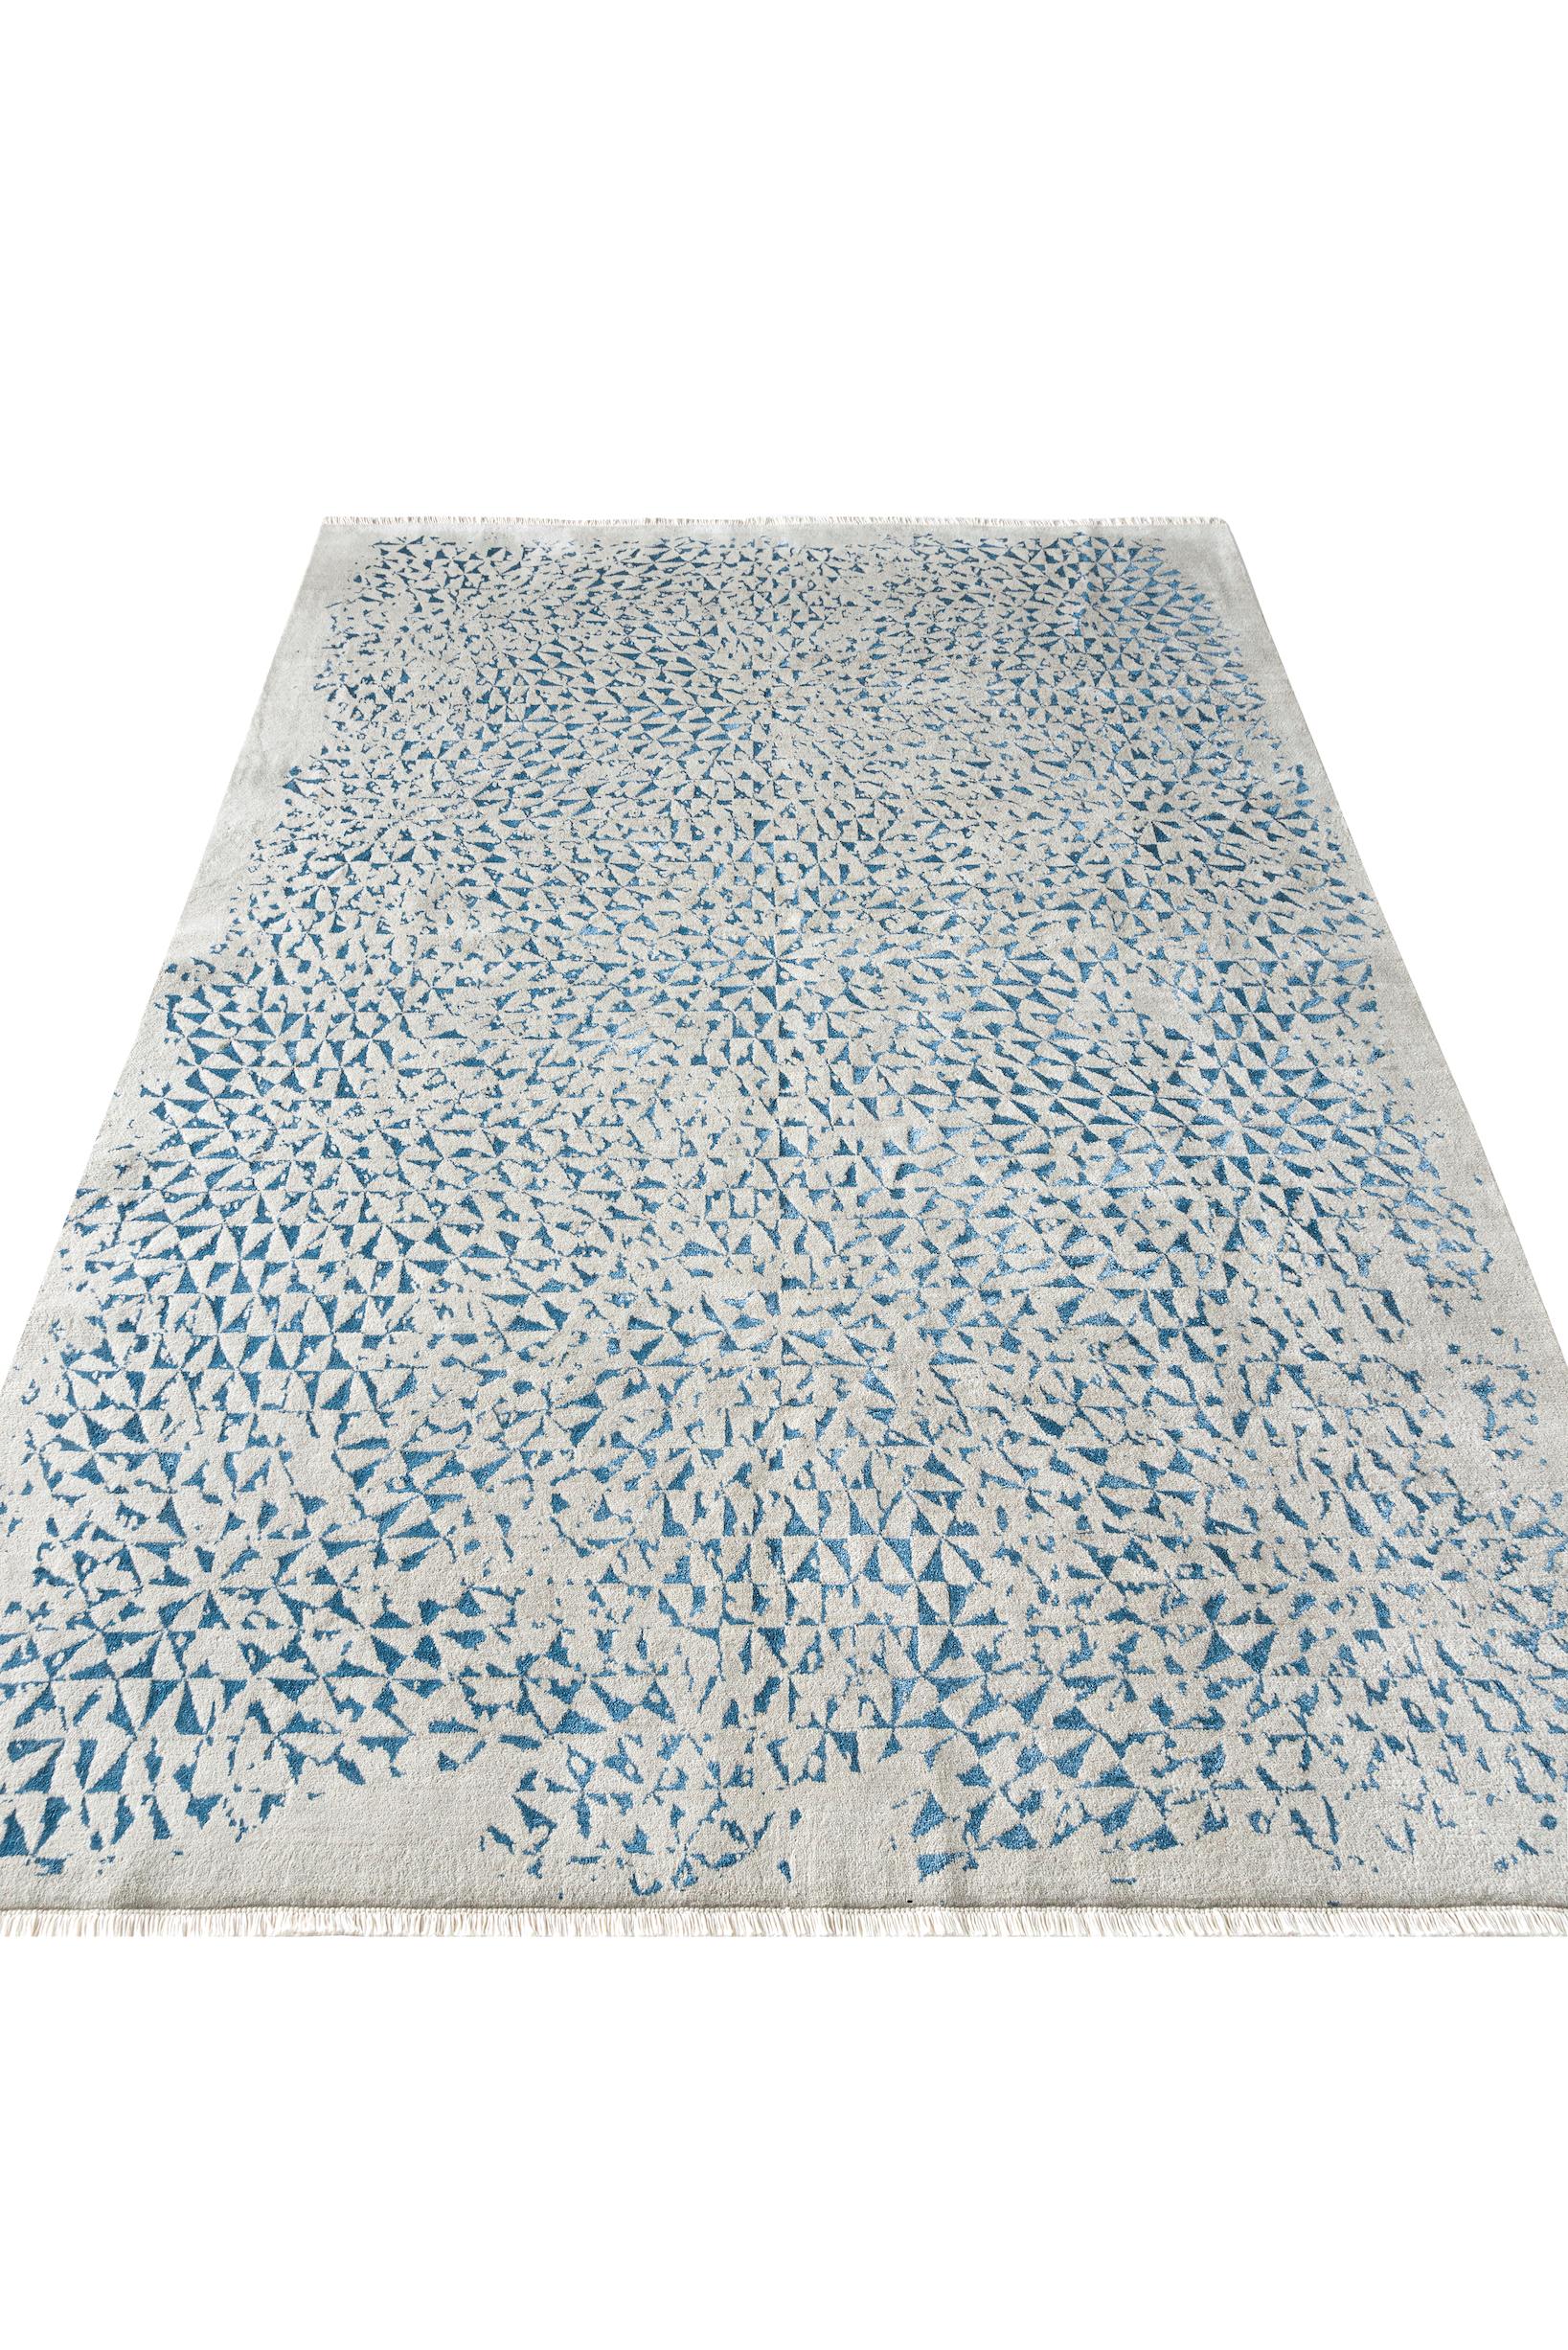 A propos du tapis :
Il s'agit d'un tapis noué à la main avec 160 000 nœuds par mètre carré dans une construction à double nœud. Il est composé d'un fil de dessus en laine égyptienne avec des incrustations de soie de bambou, et d'une chaîne et d'une